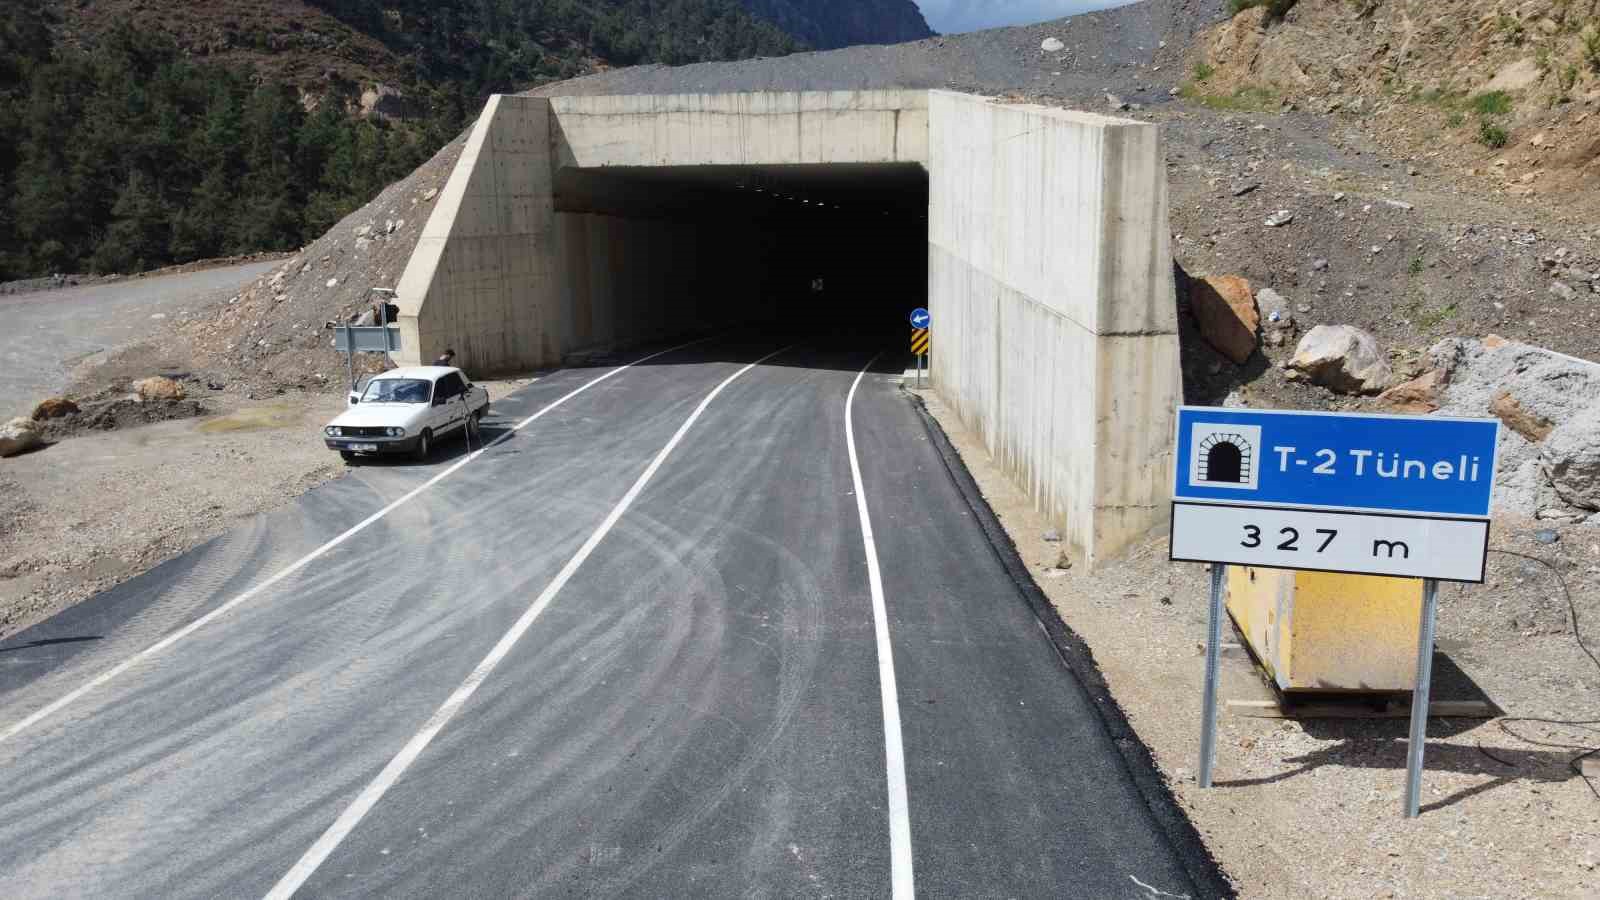 Kozan - Kayseri yolunu 20 dakikadan 5 dakikaya düşüren 2 tünel açıldı